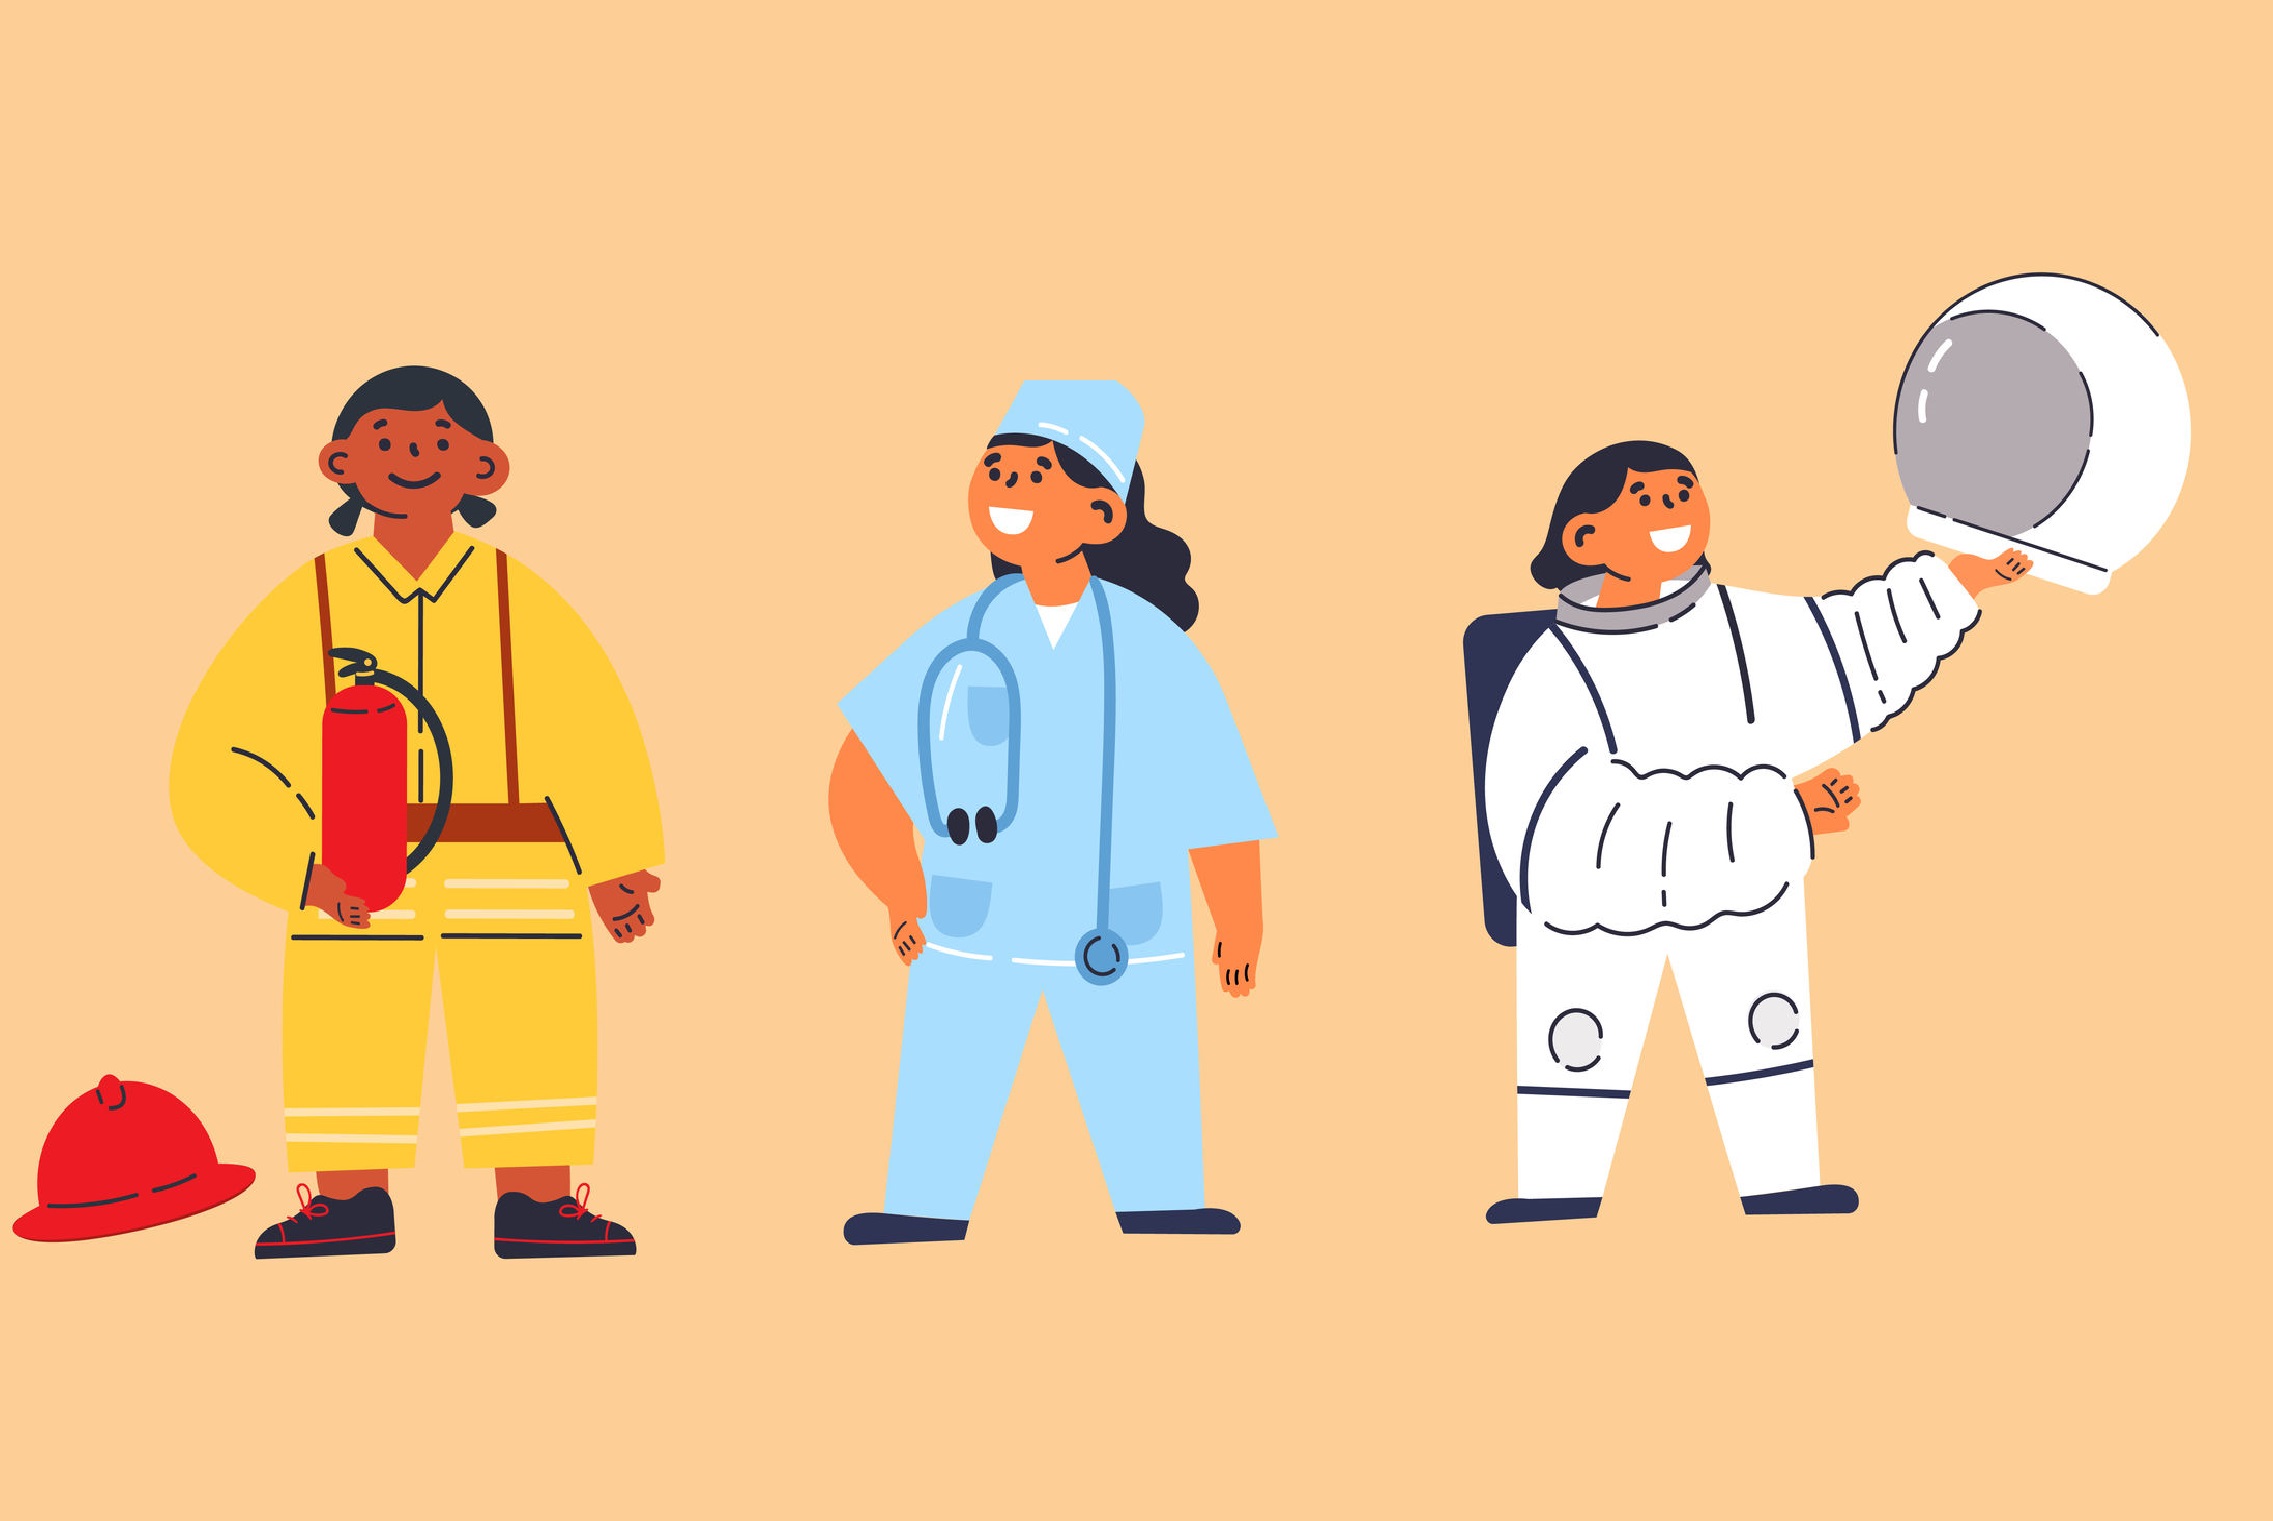 插圖中有一位消防員、醫生和太空人，全部都是女性。